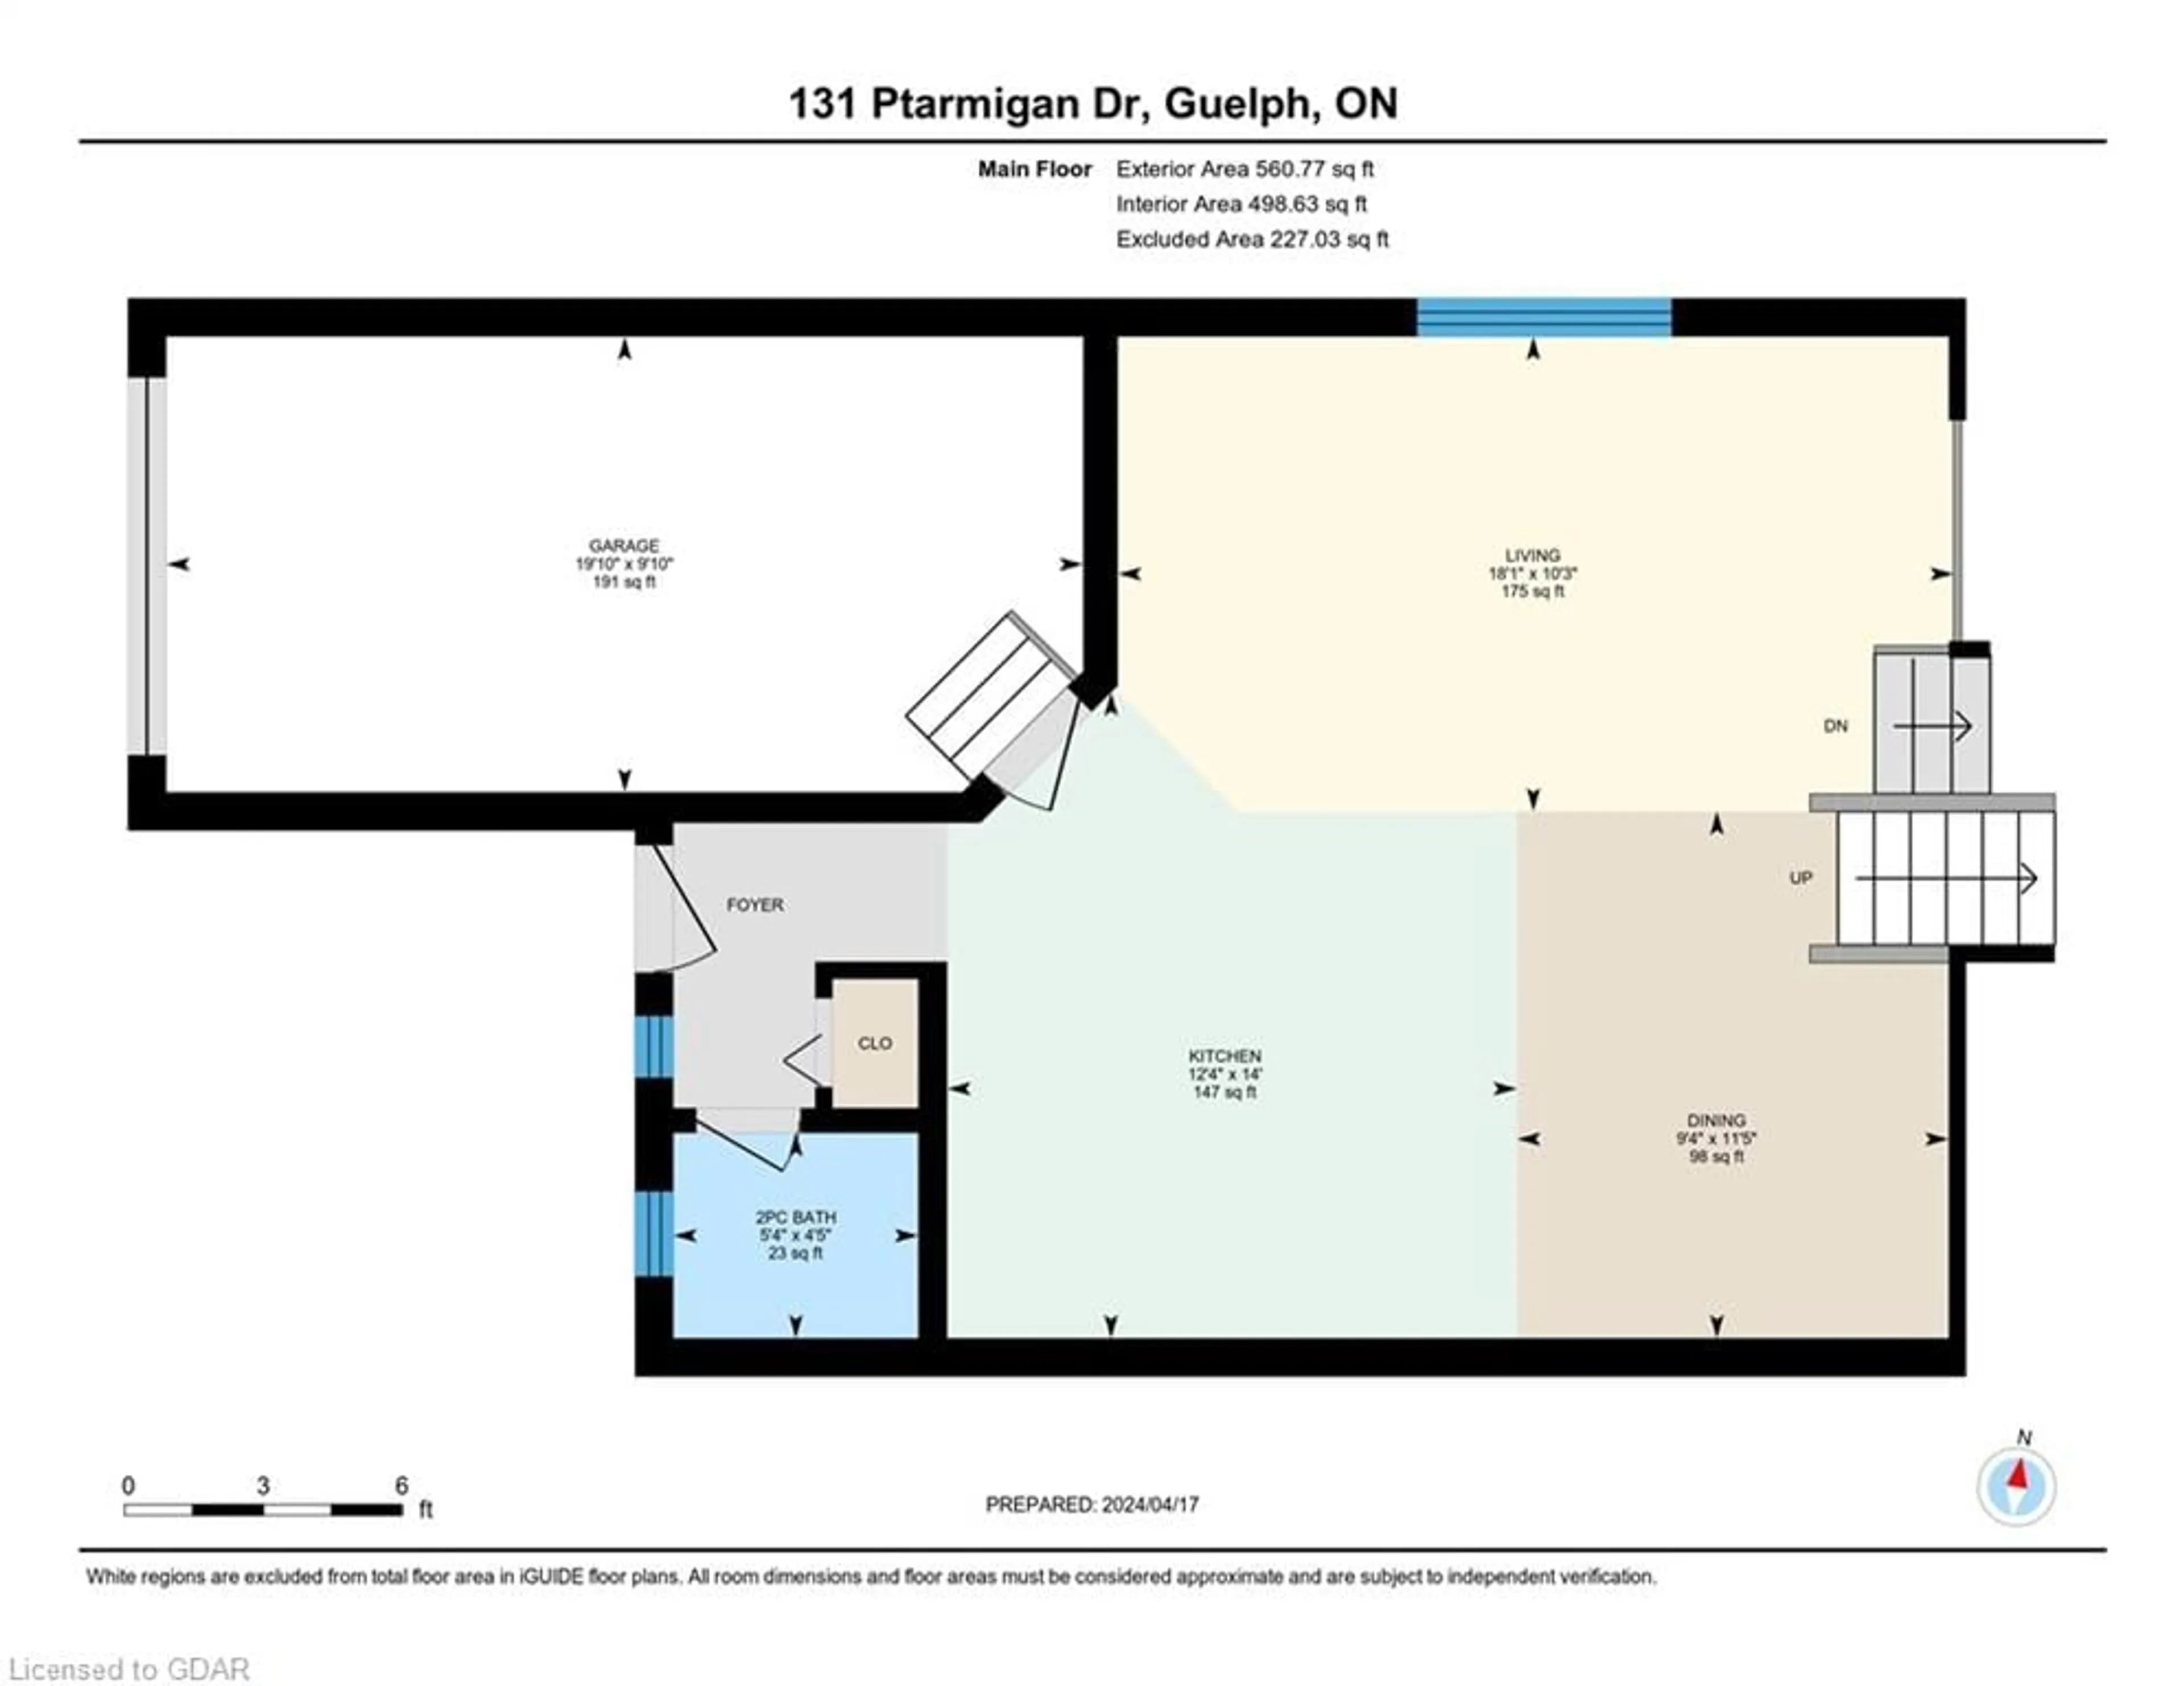 Floor plan for 131 Ptarmigan Dr, Guelph Ontario N1C 1E9